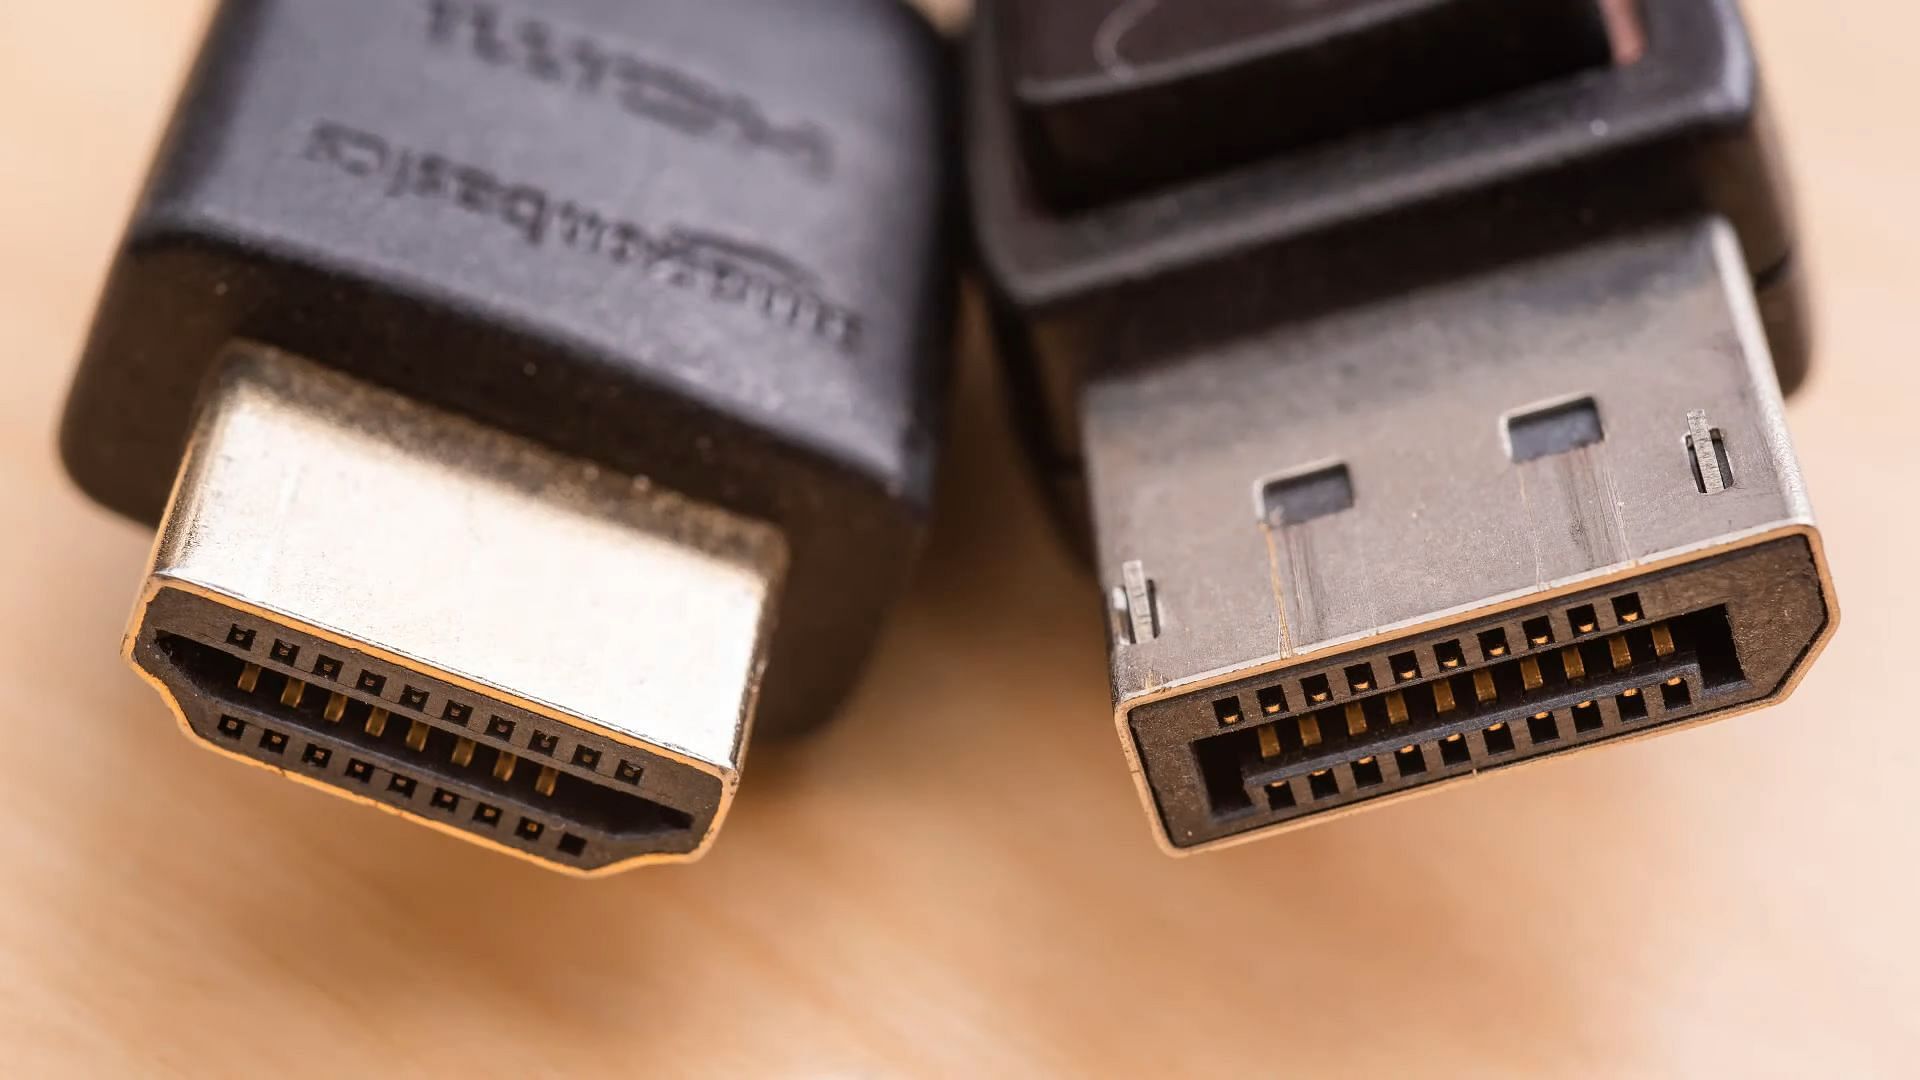 HDMI vs DisplayPort is an old debate (Image via Google Images)